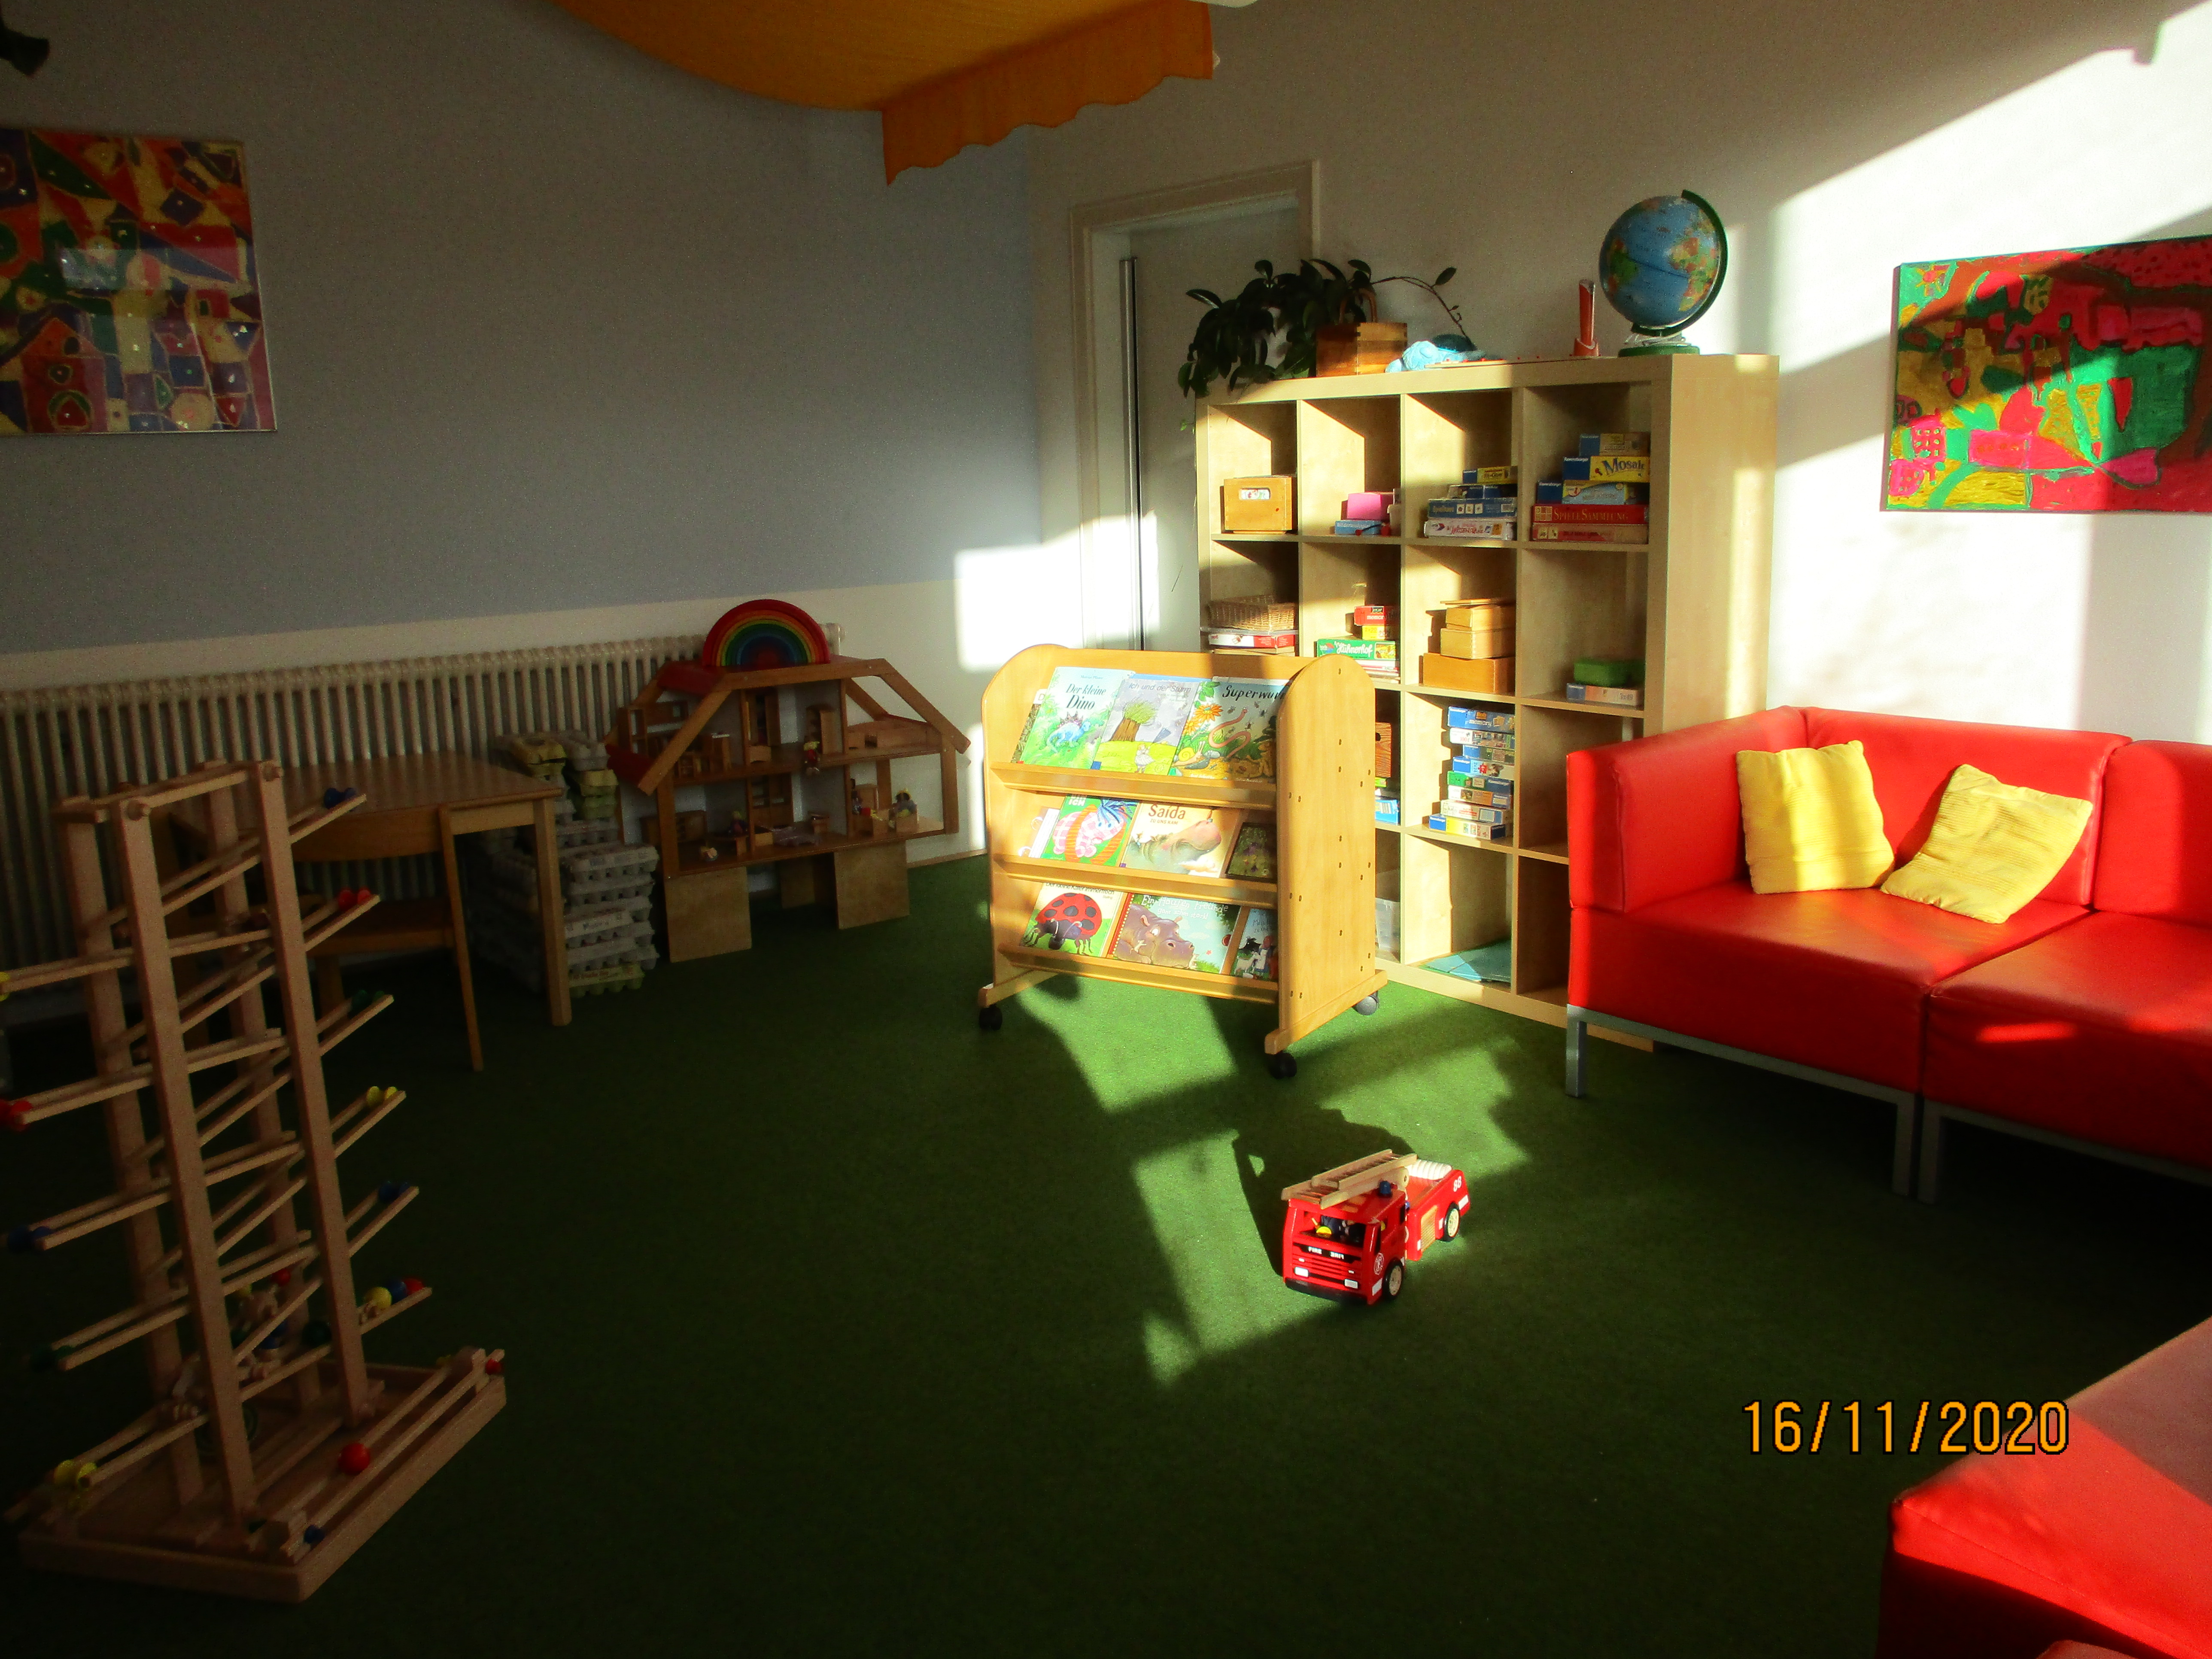 Hier steht an der hinteren Wand ein rotes Sofa mit gelben Kissen. E ist ein Regal mit Büchern und ein weiteres mit Spielen zu sehen. Außerdem ist im Vordergrund eine Kugelbahn ersichtlich.